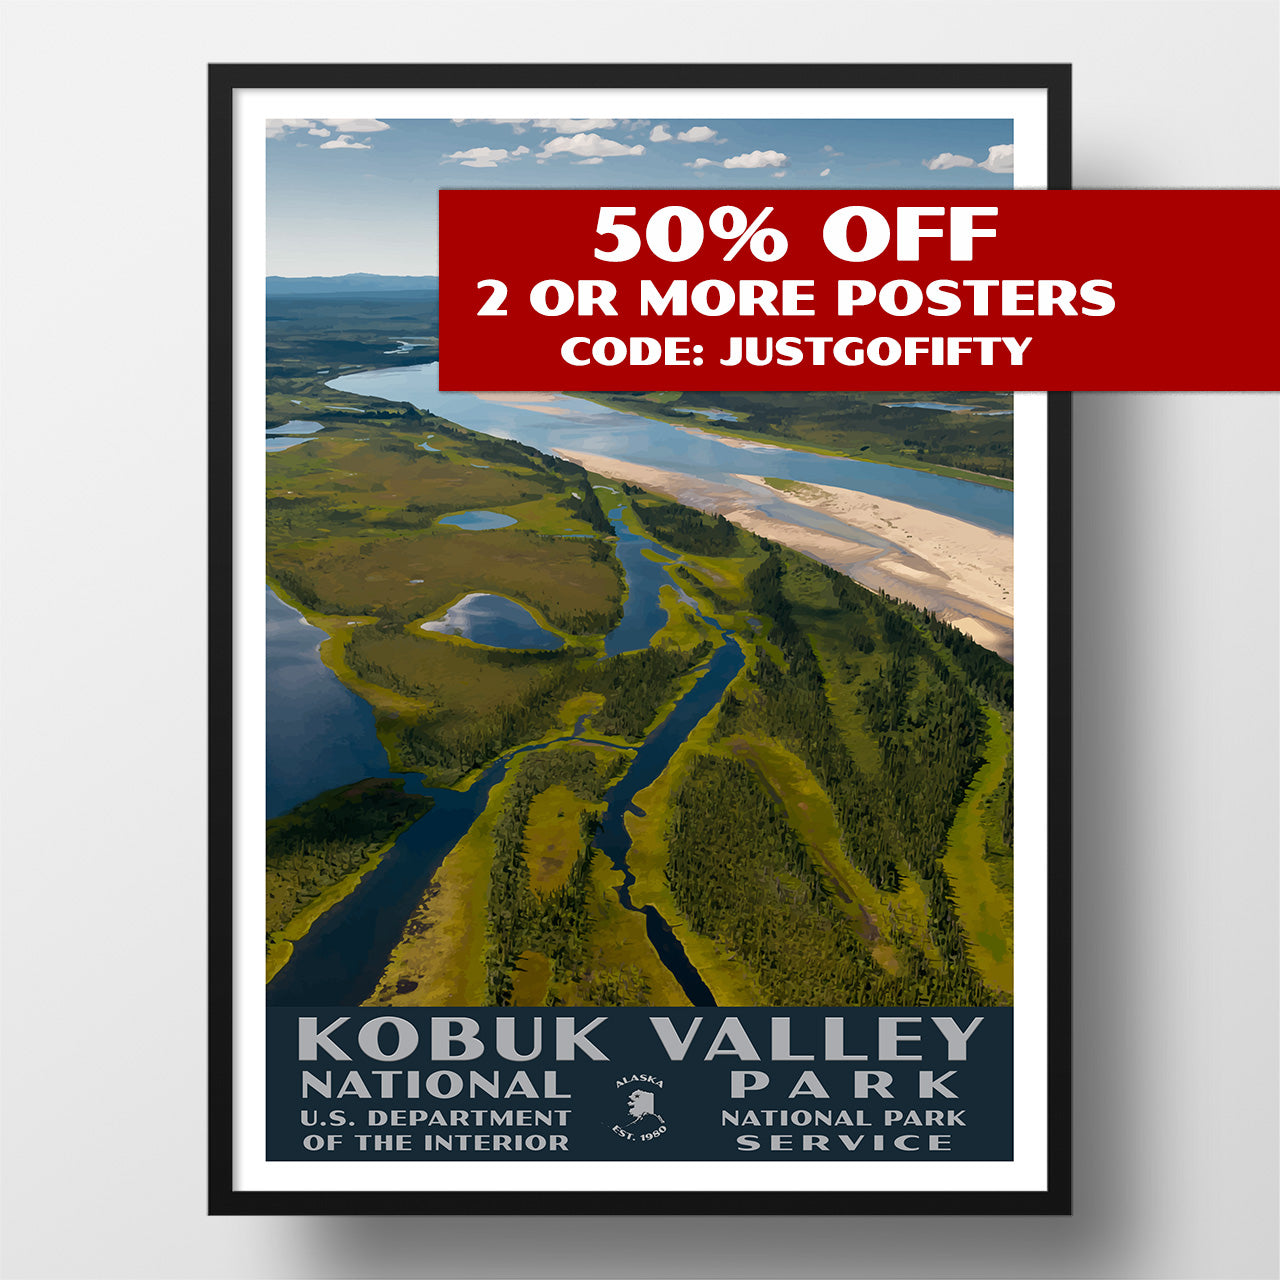 obuk Valley National Park poster